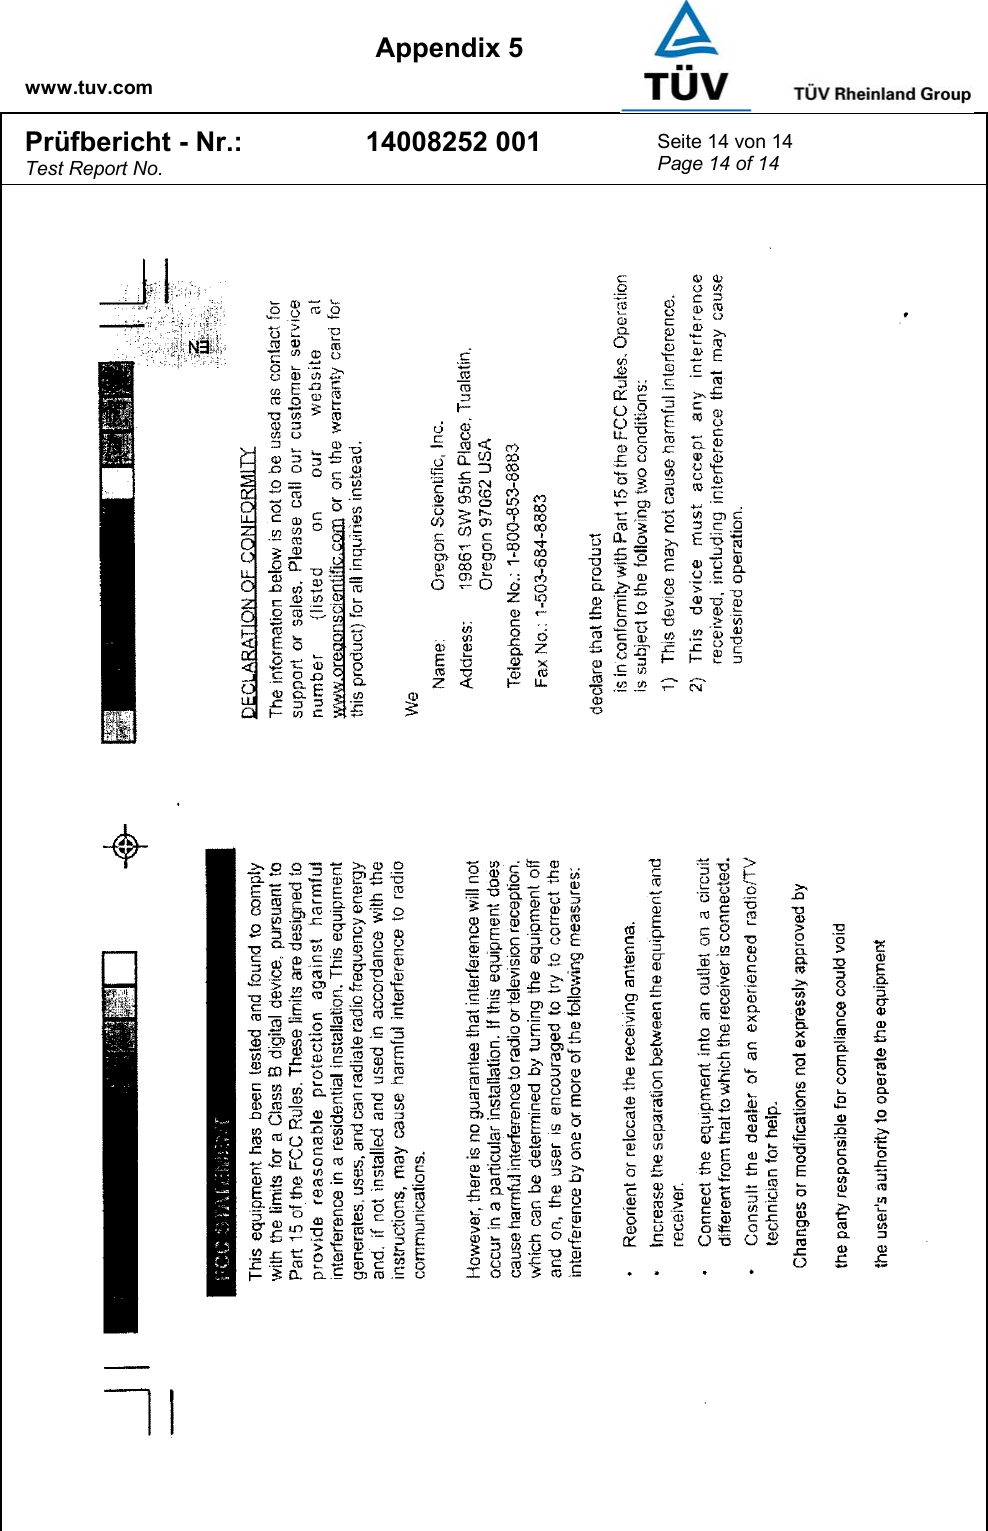    www.tuv.com  Appendix 5 Prüfbericht - Nr.: Test Report No. 14008252 001  Seite 14 von 14 Page 14 of 14    